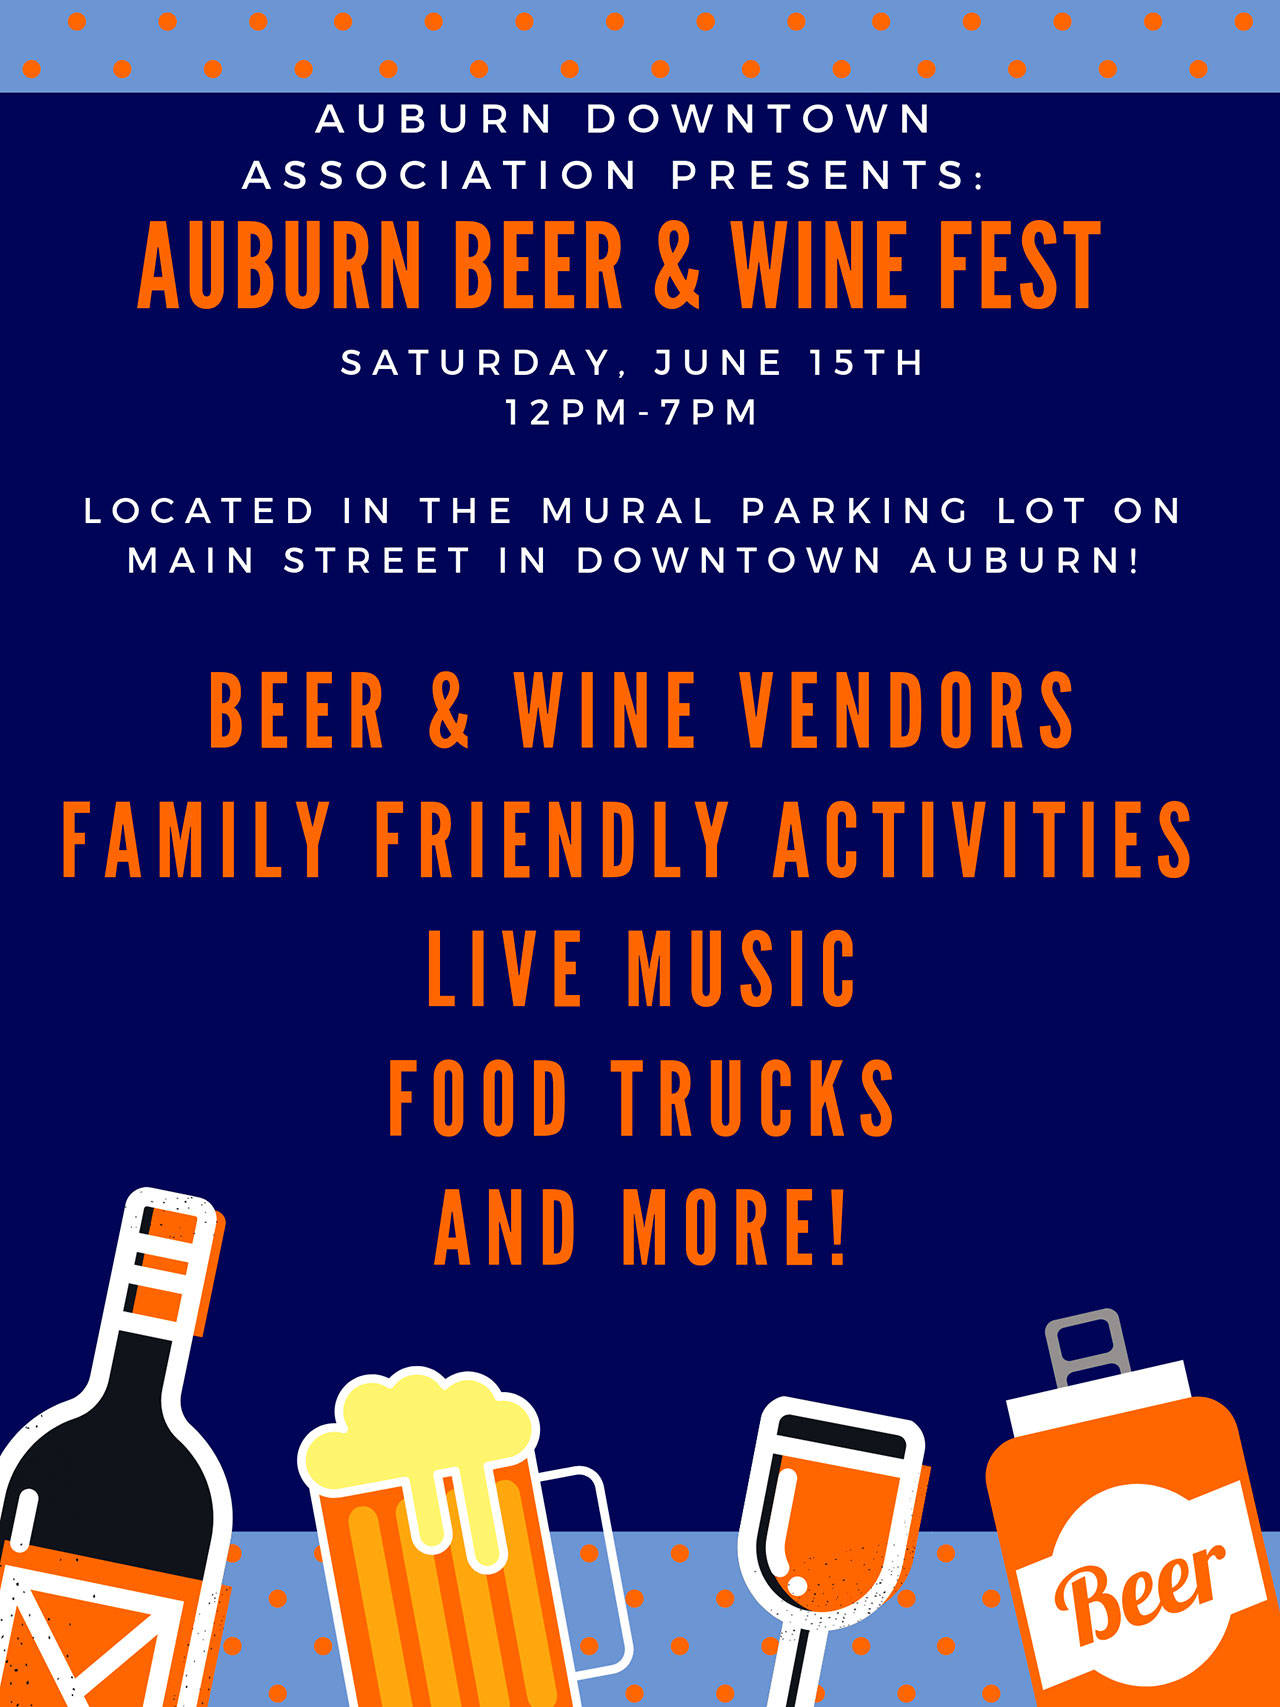 ADA serves up Auburn Beer & Wine Festival on June 15